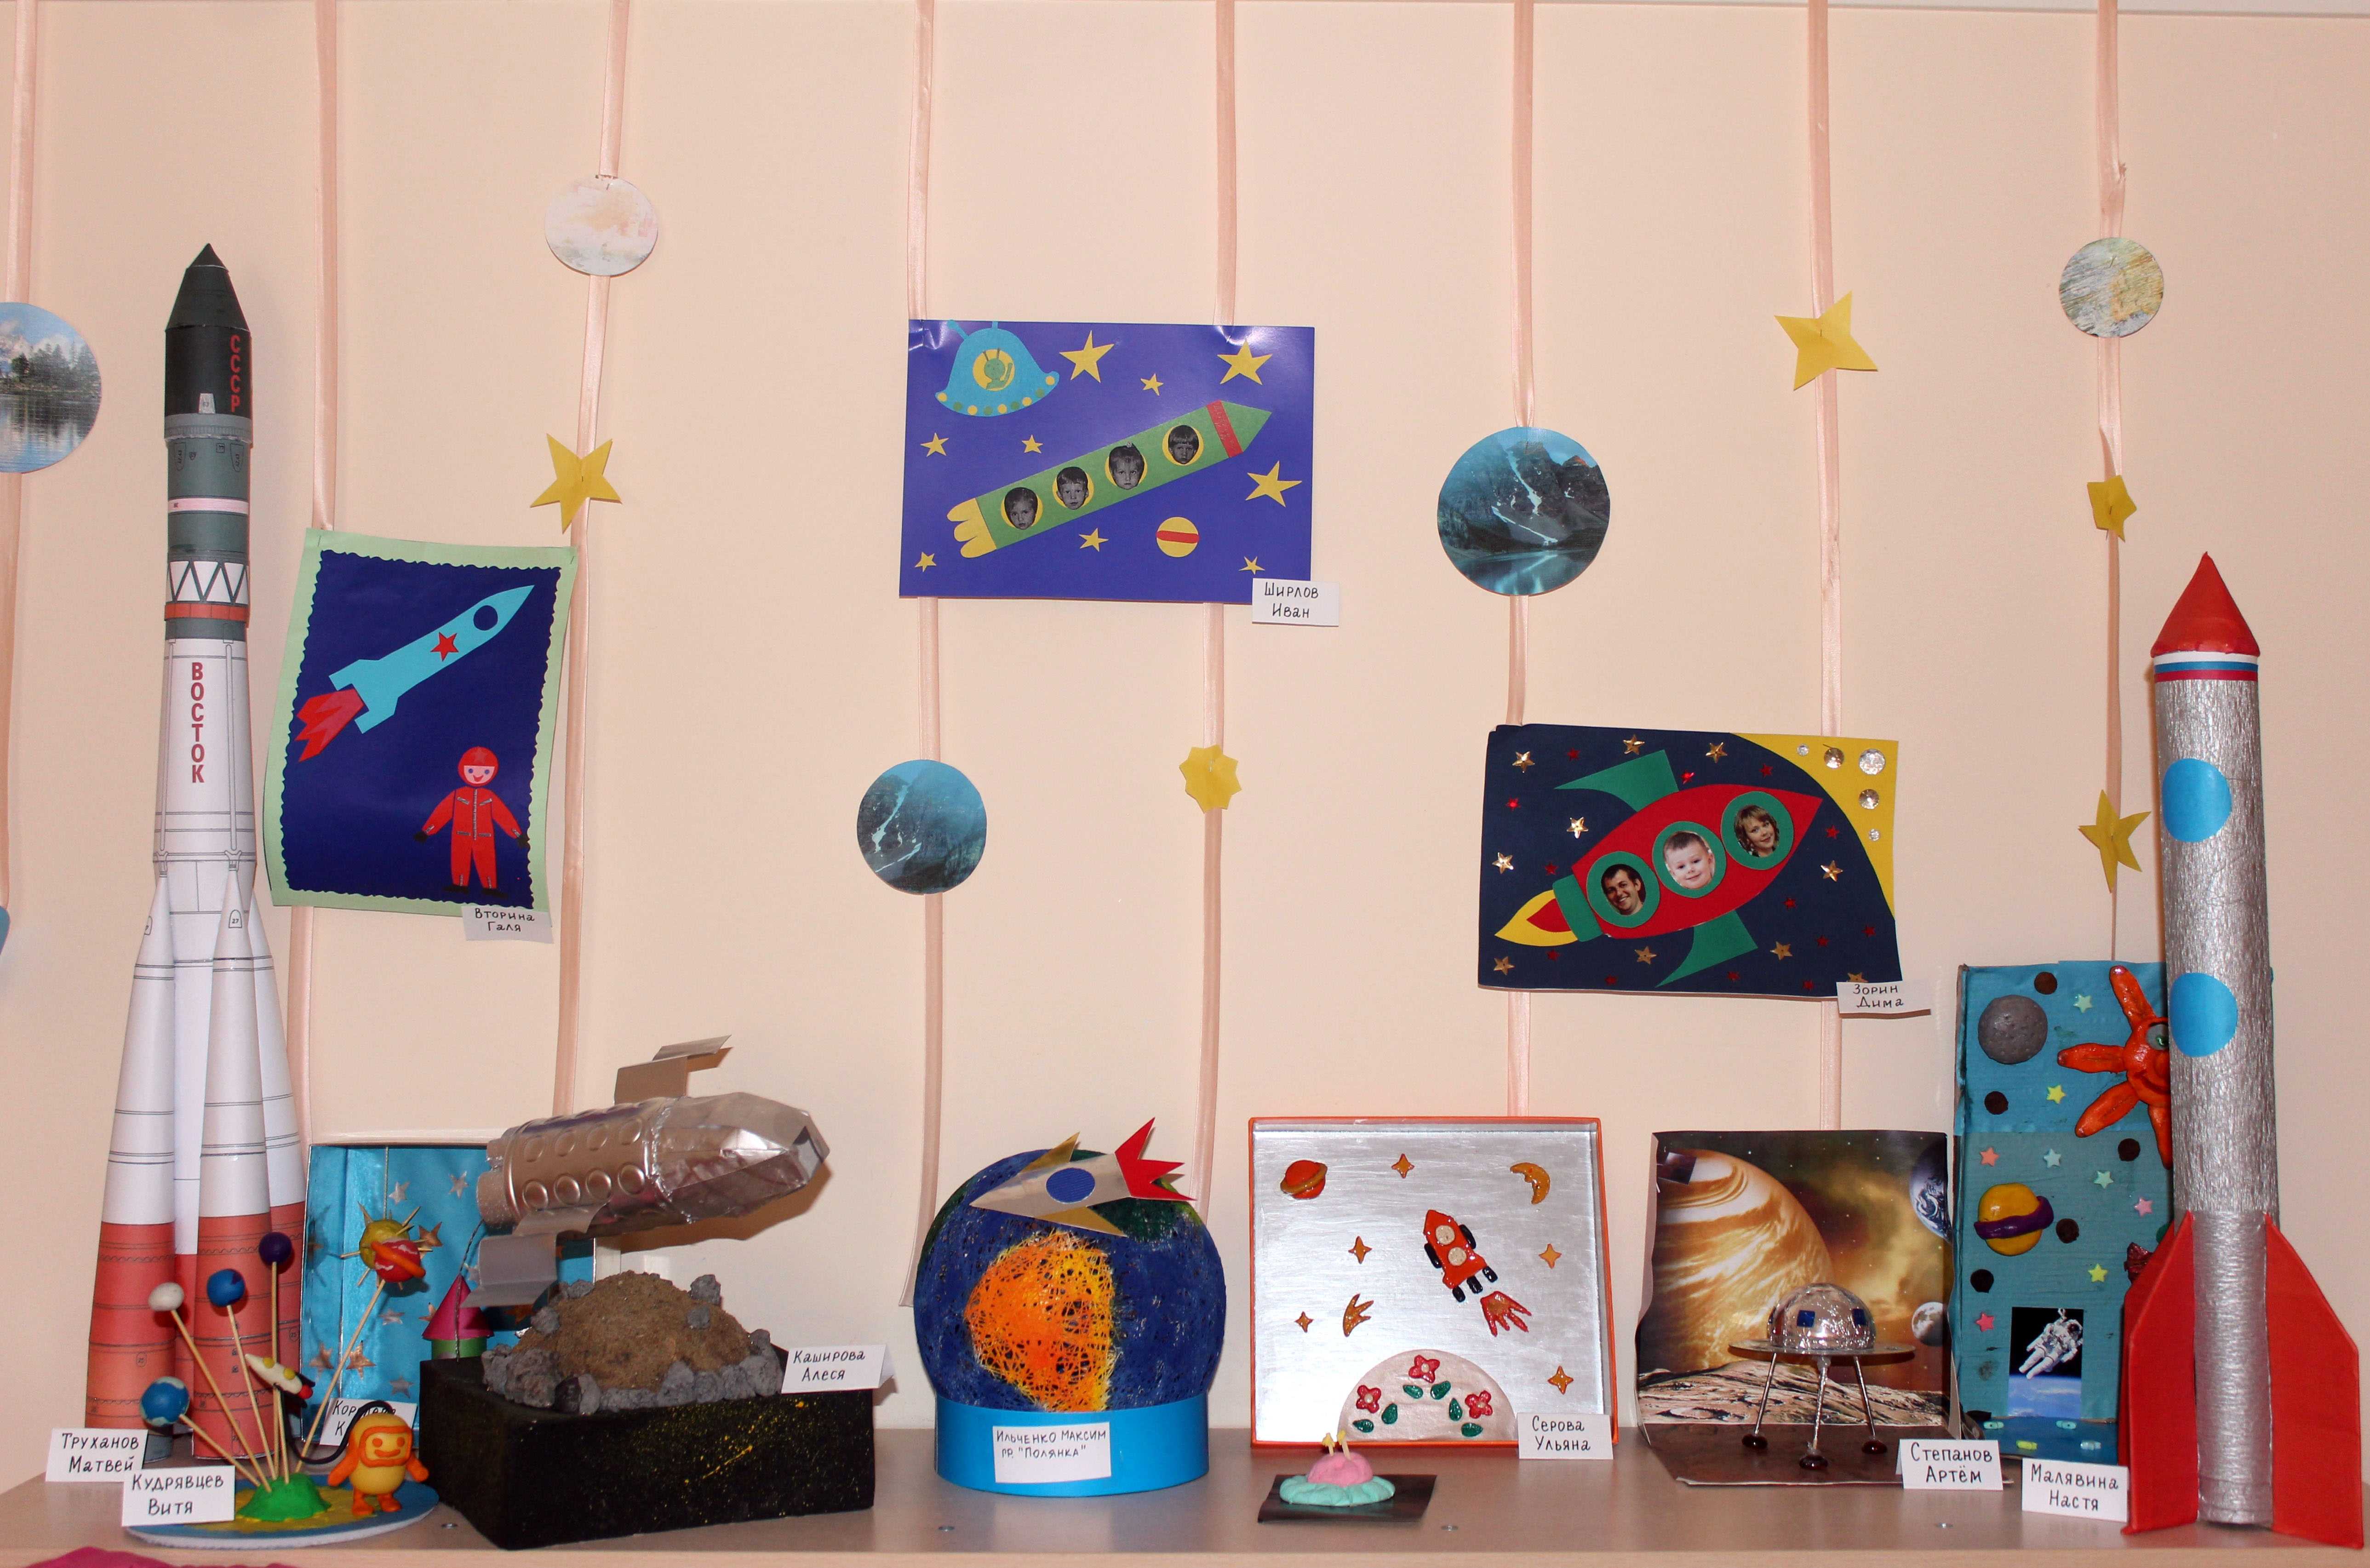 Выставка ко дню космонавтики в школе